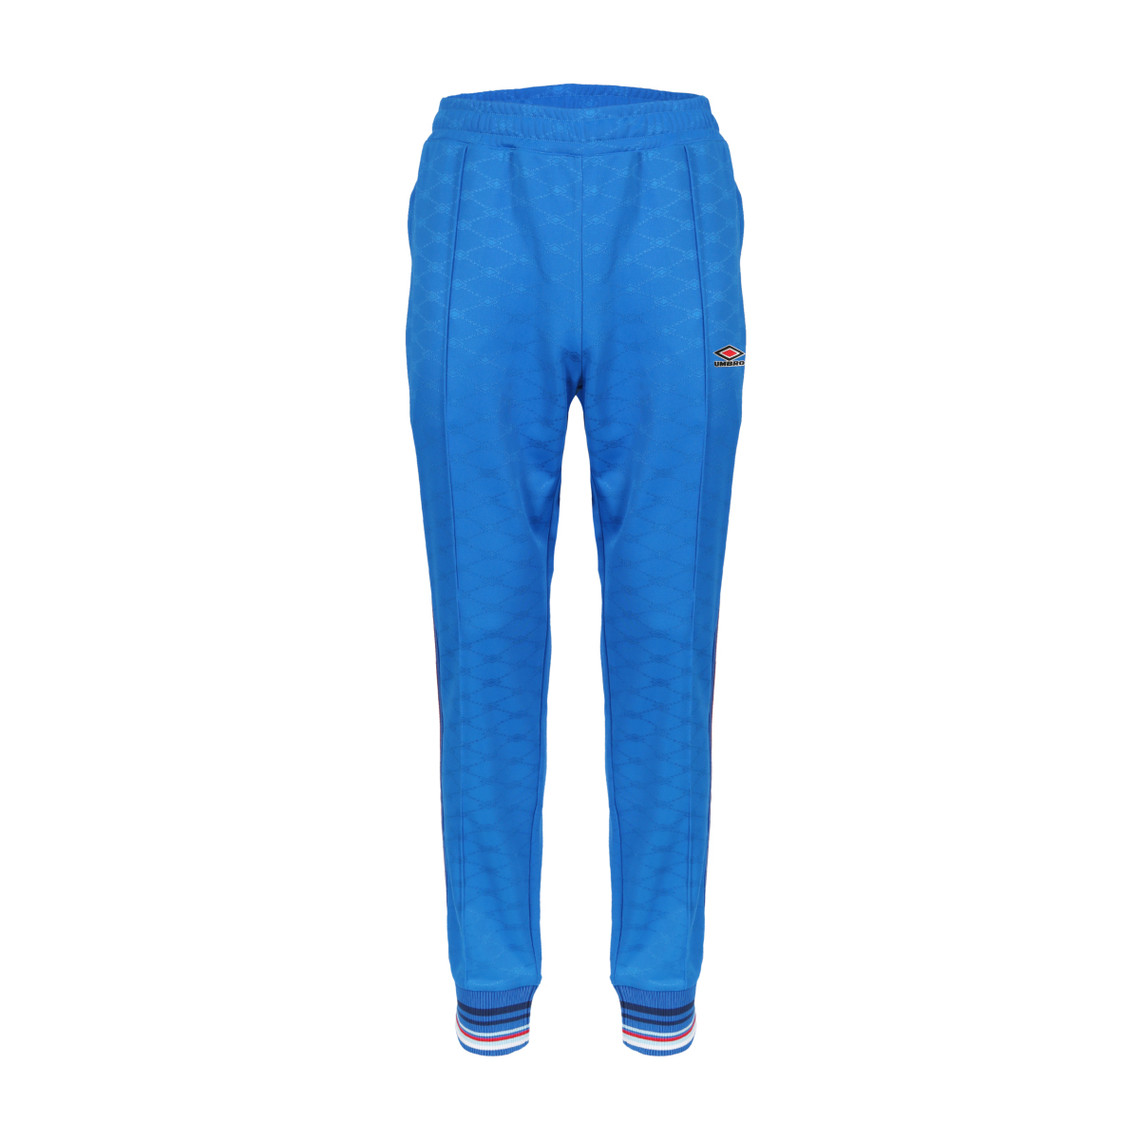 Pantalon de jogging pour homme bleu